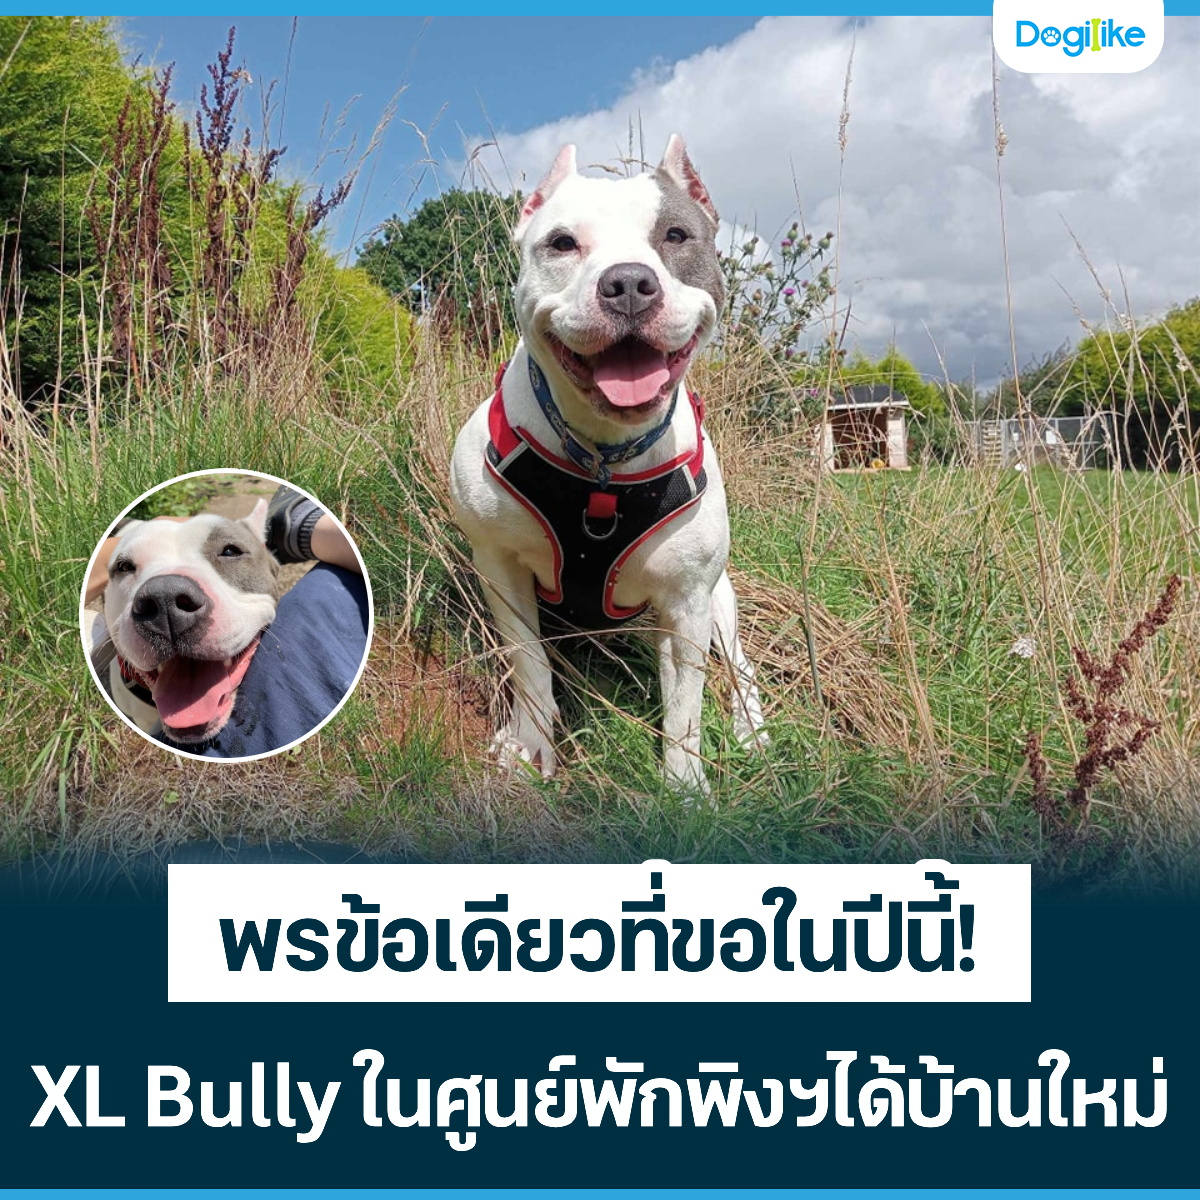 Dogilike.com :: ╛├вщ═р┤╒┬╟╖╒шв═у╣╗╒╣╒щ! XL Bully у╣╚┘╣┬ь╛╤б╛╘з╧ф┤щ║щ╥╣у╦┴ш